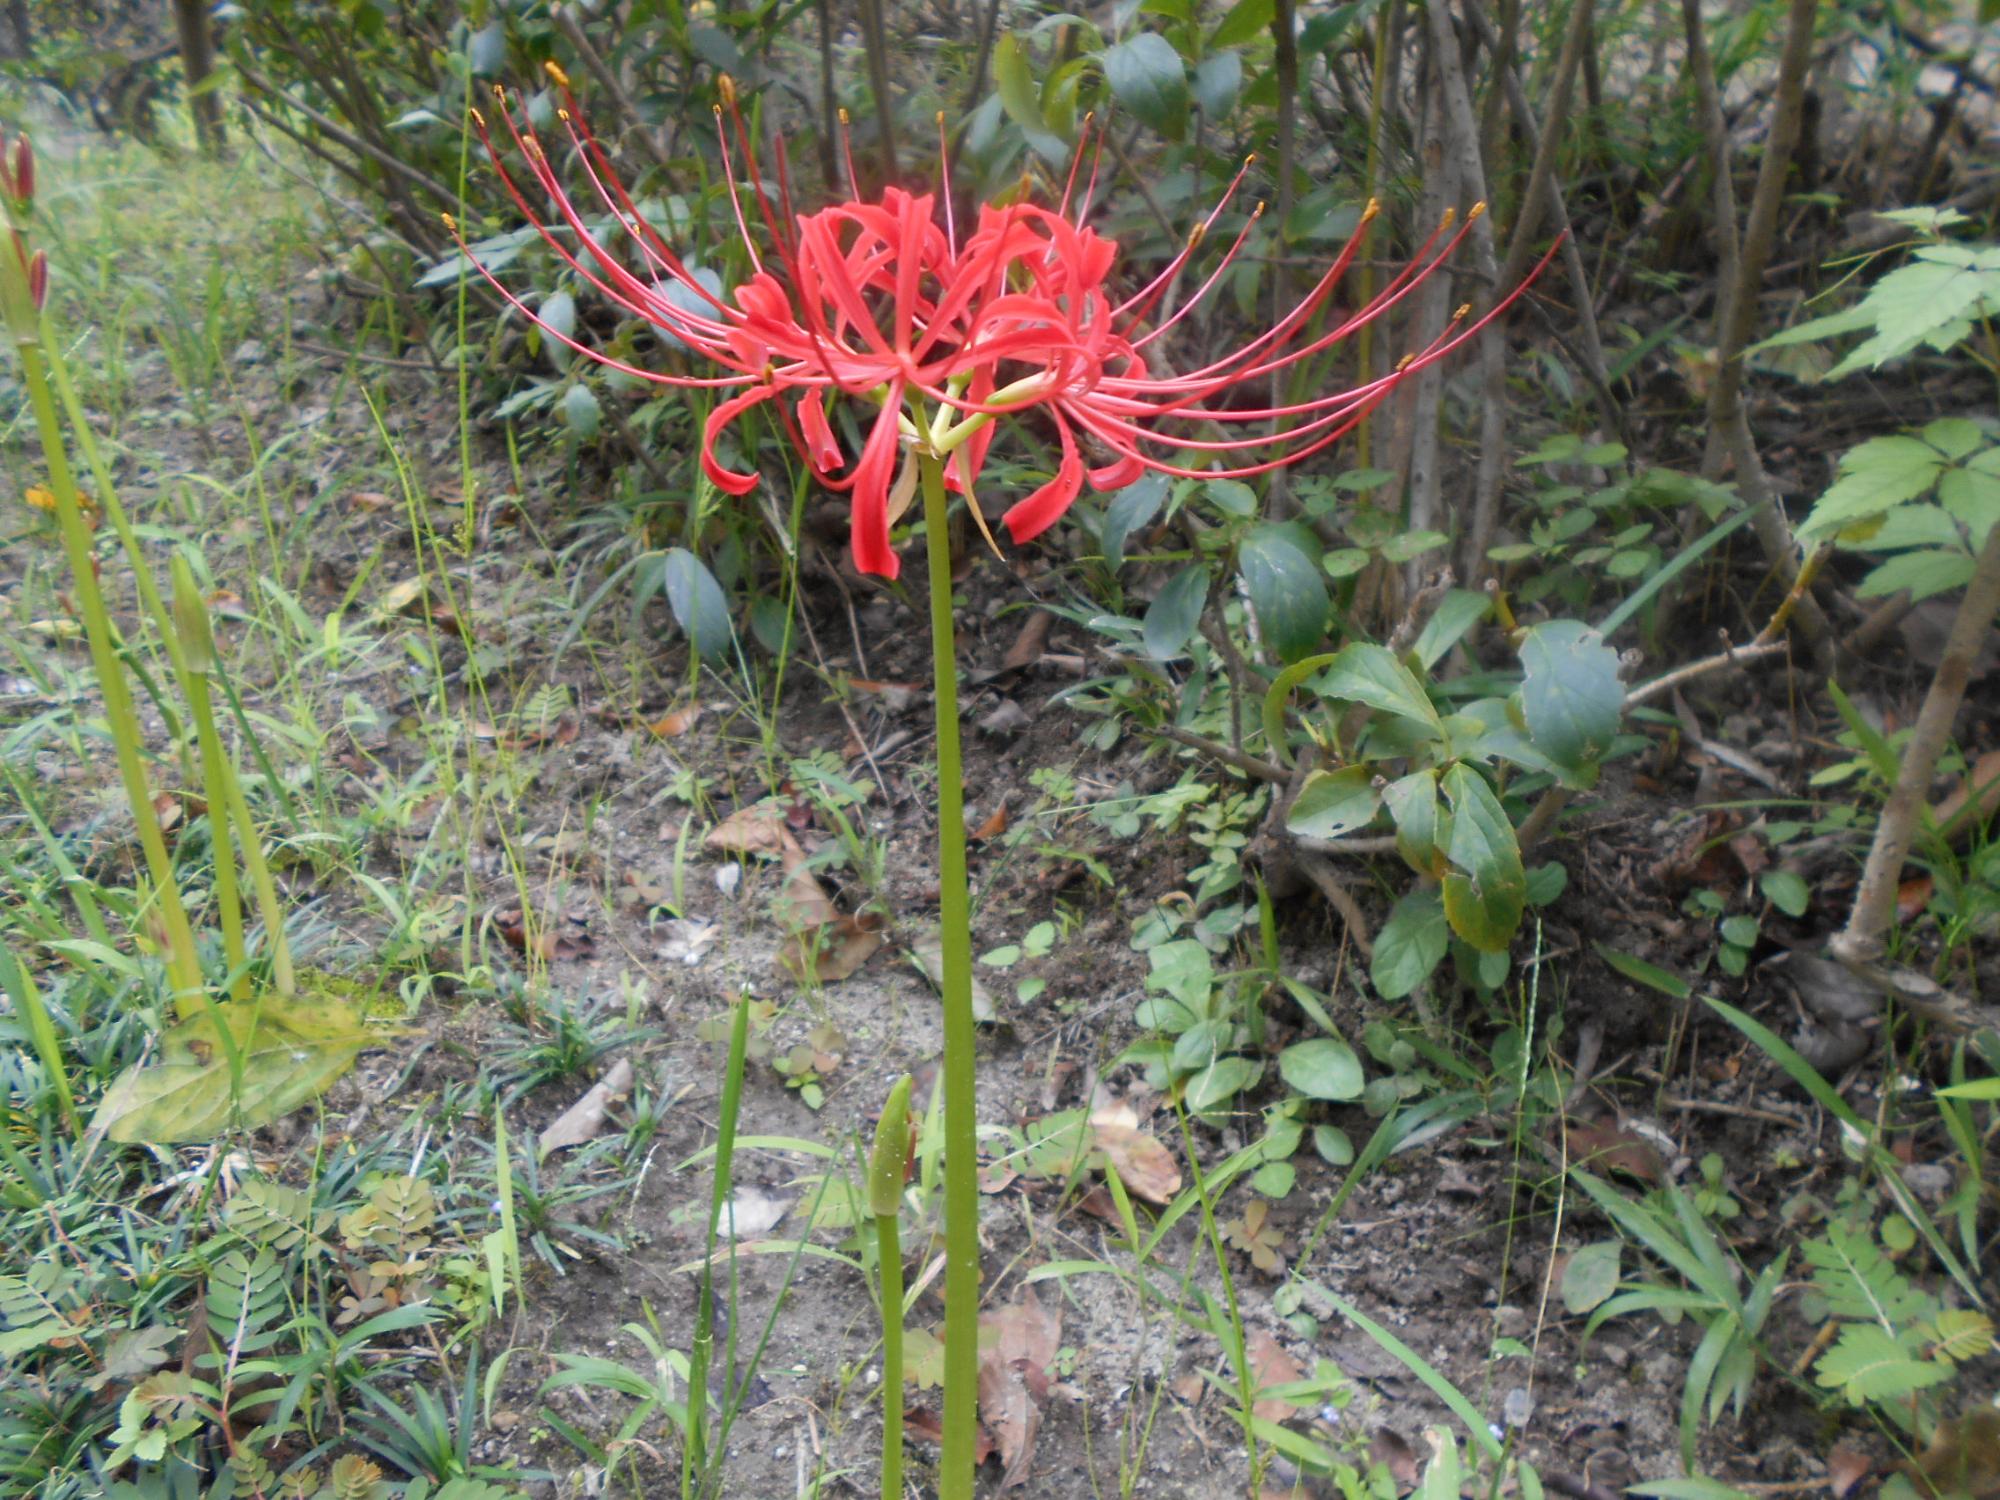 赤い花のヒガンバナです。赤い花の方が一般的です。薬草園では、赤と白の両方のヒガンバナが見られますよ。